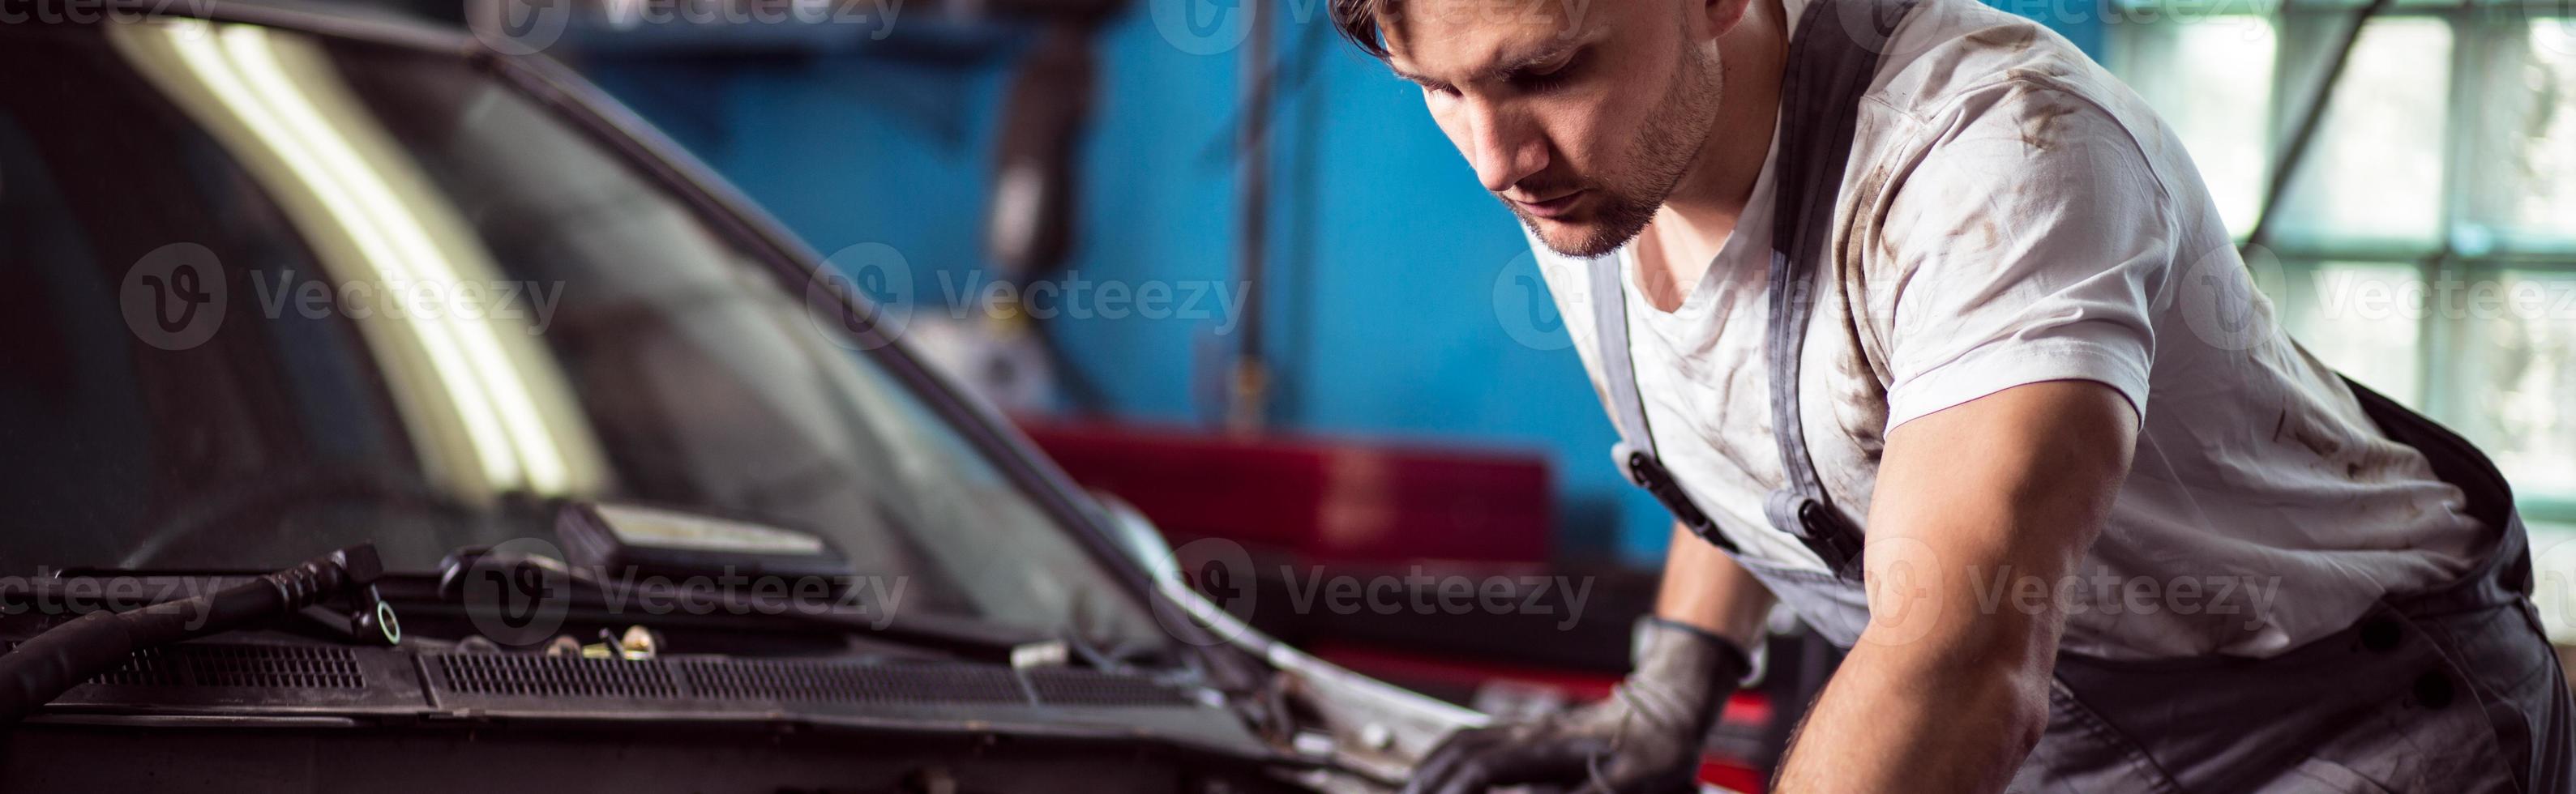 mecânico de automóveis, consertando o carro foto